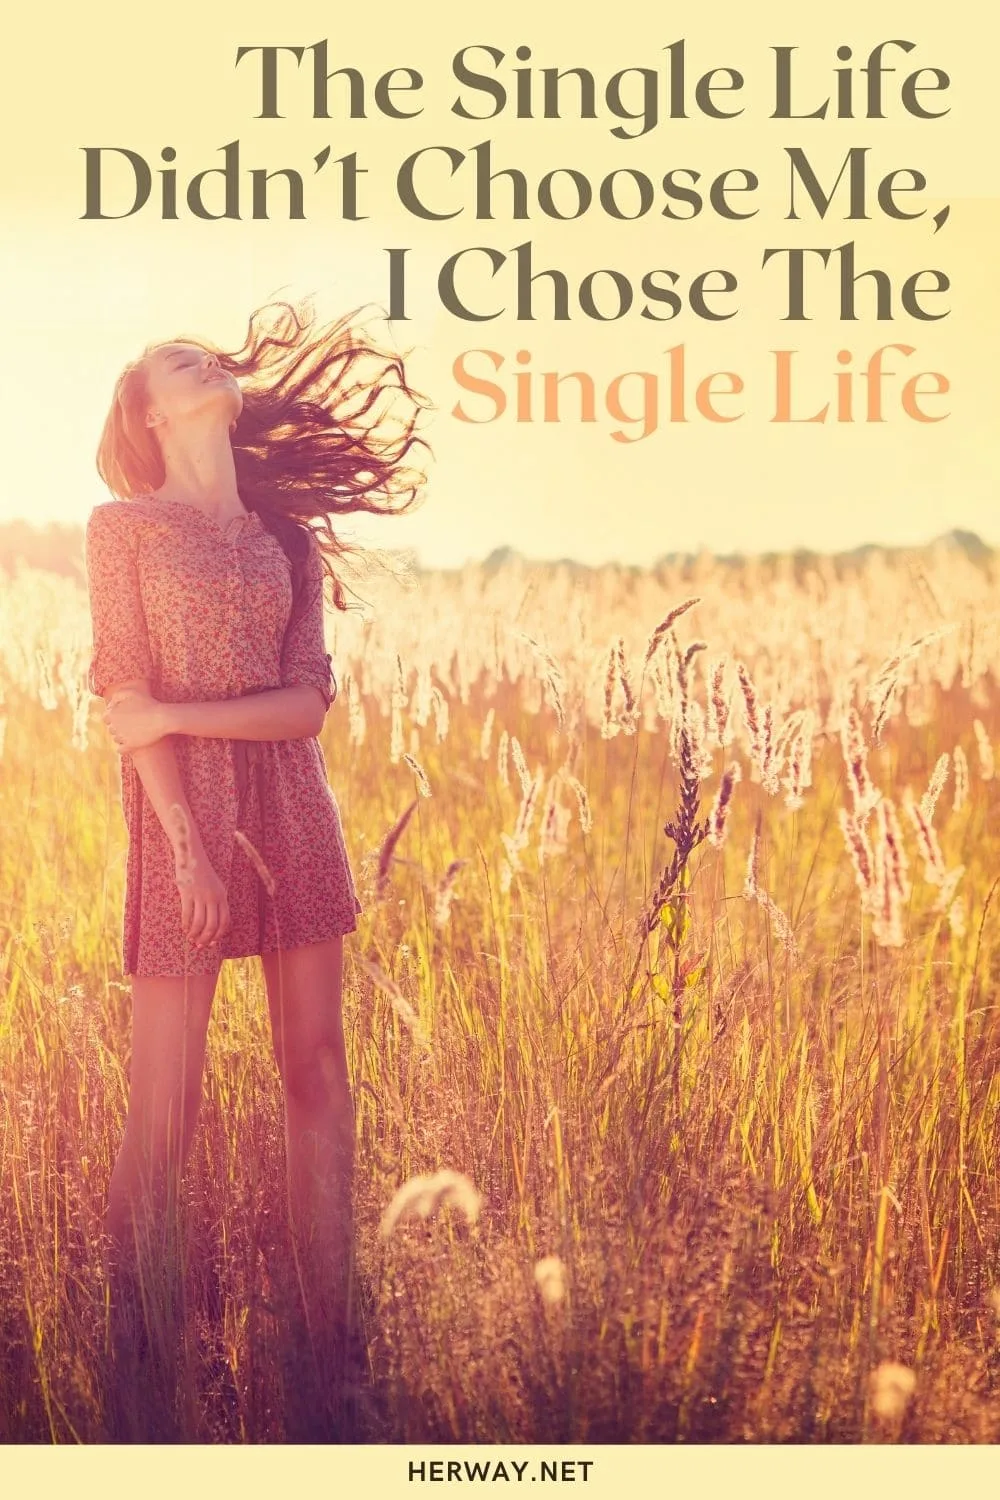 The Single Life Didn’t Choose Me, I Chose The Single Life